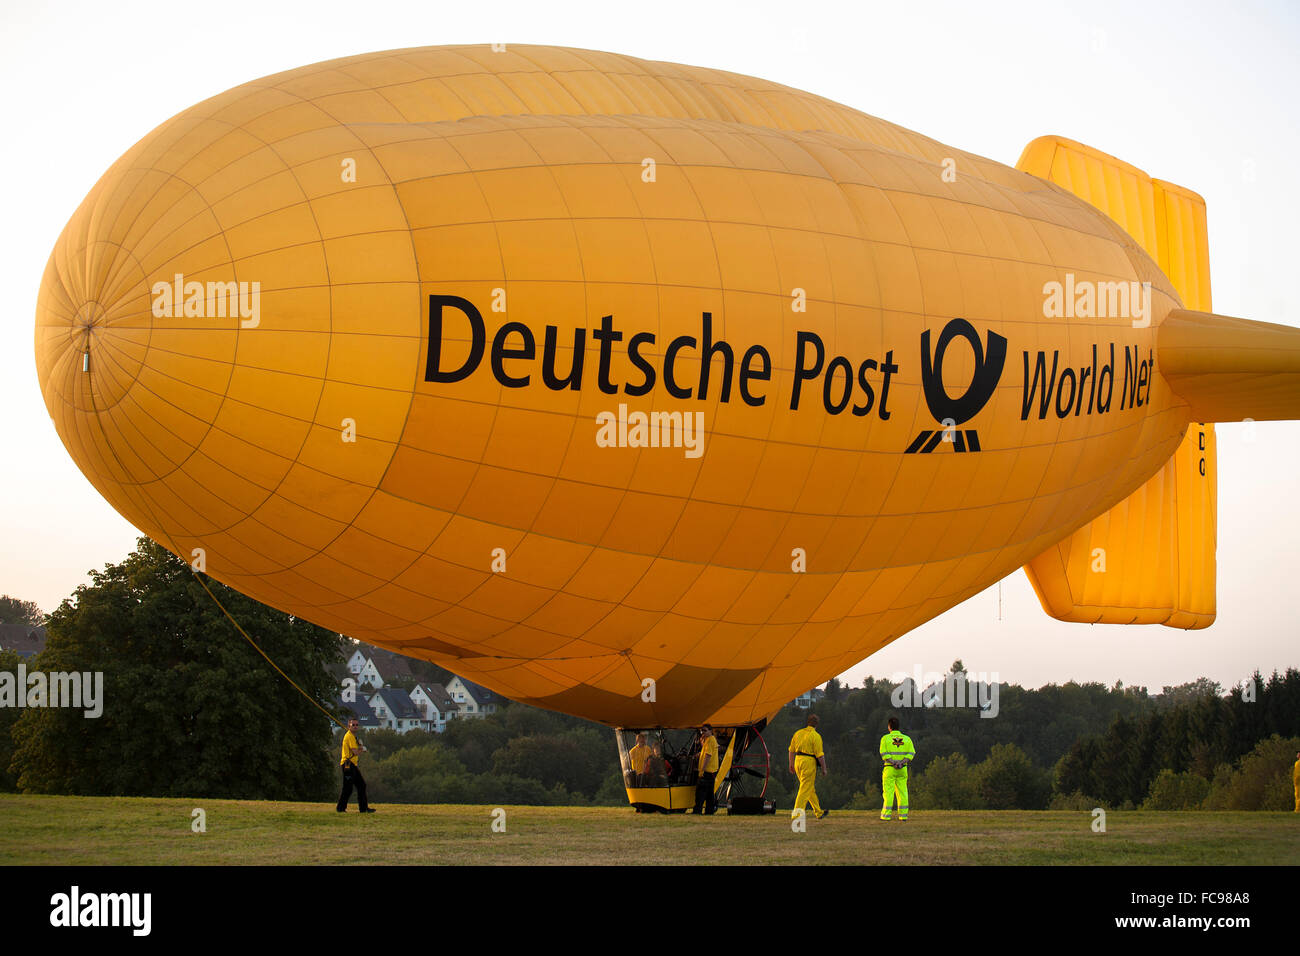 DEU, Germany, Sauerland region, Warstein, international balloon festival in Warstein, blimp of the Deutsche Post World Net [the  Stock Photo